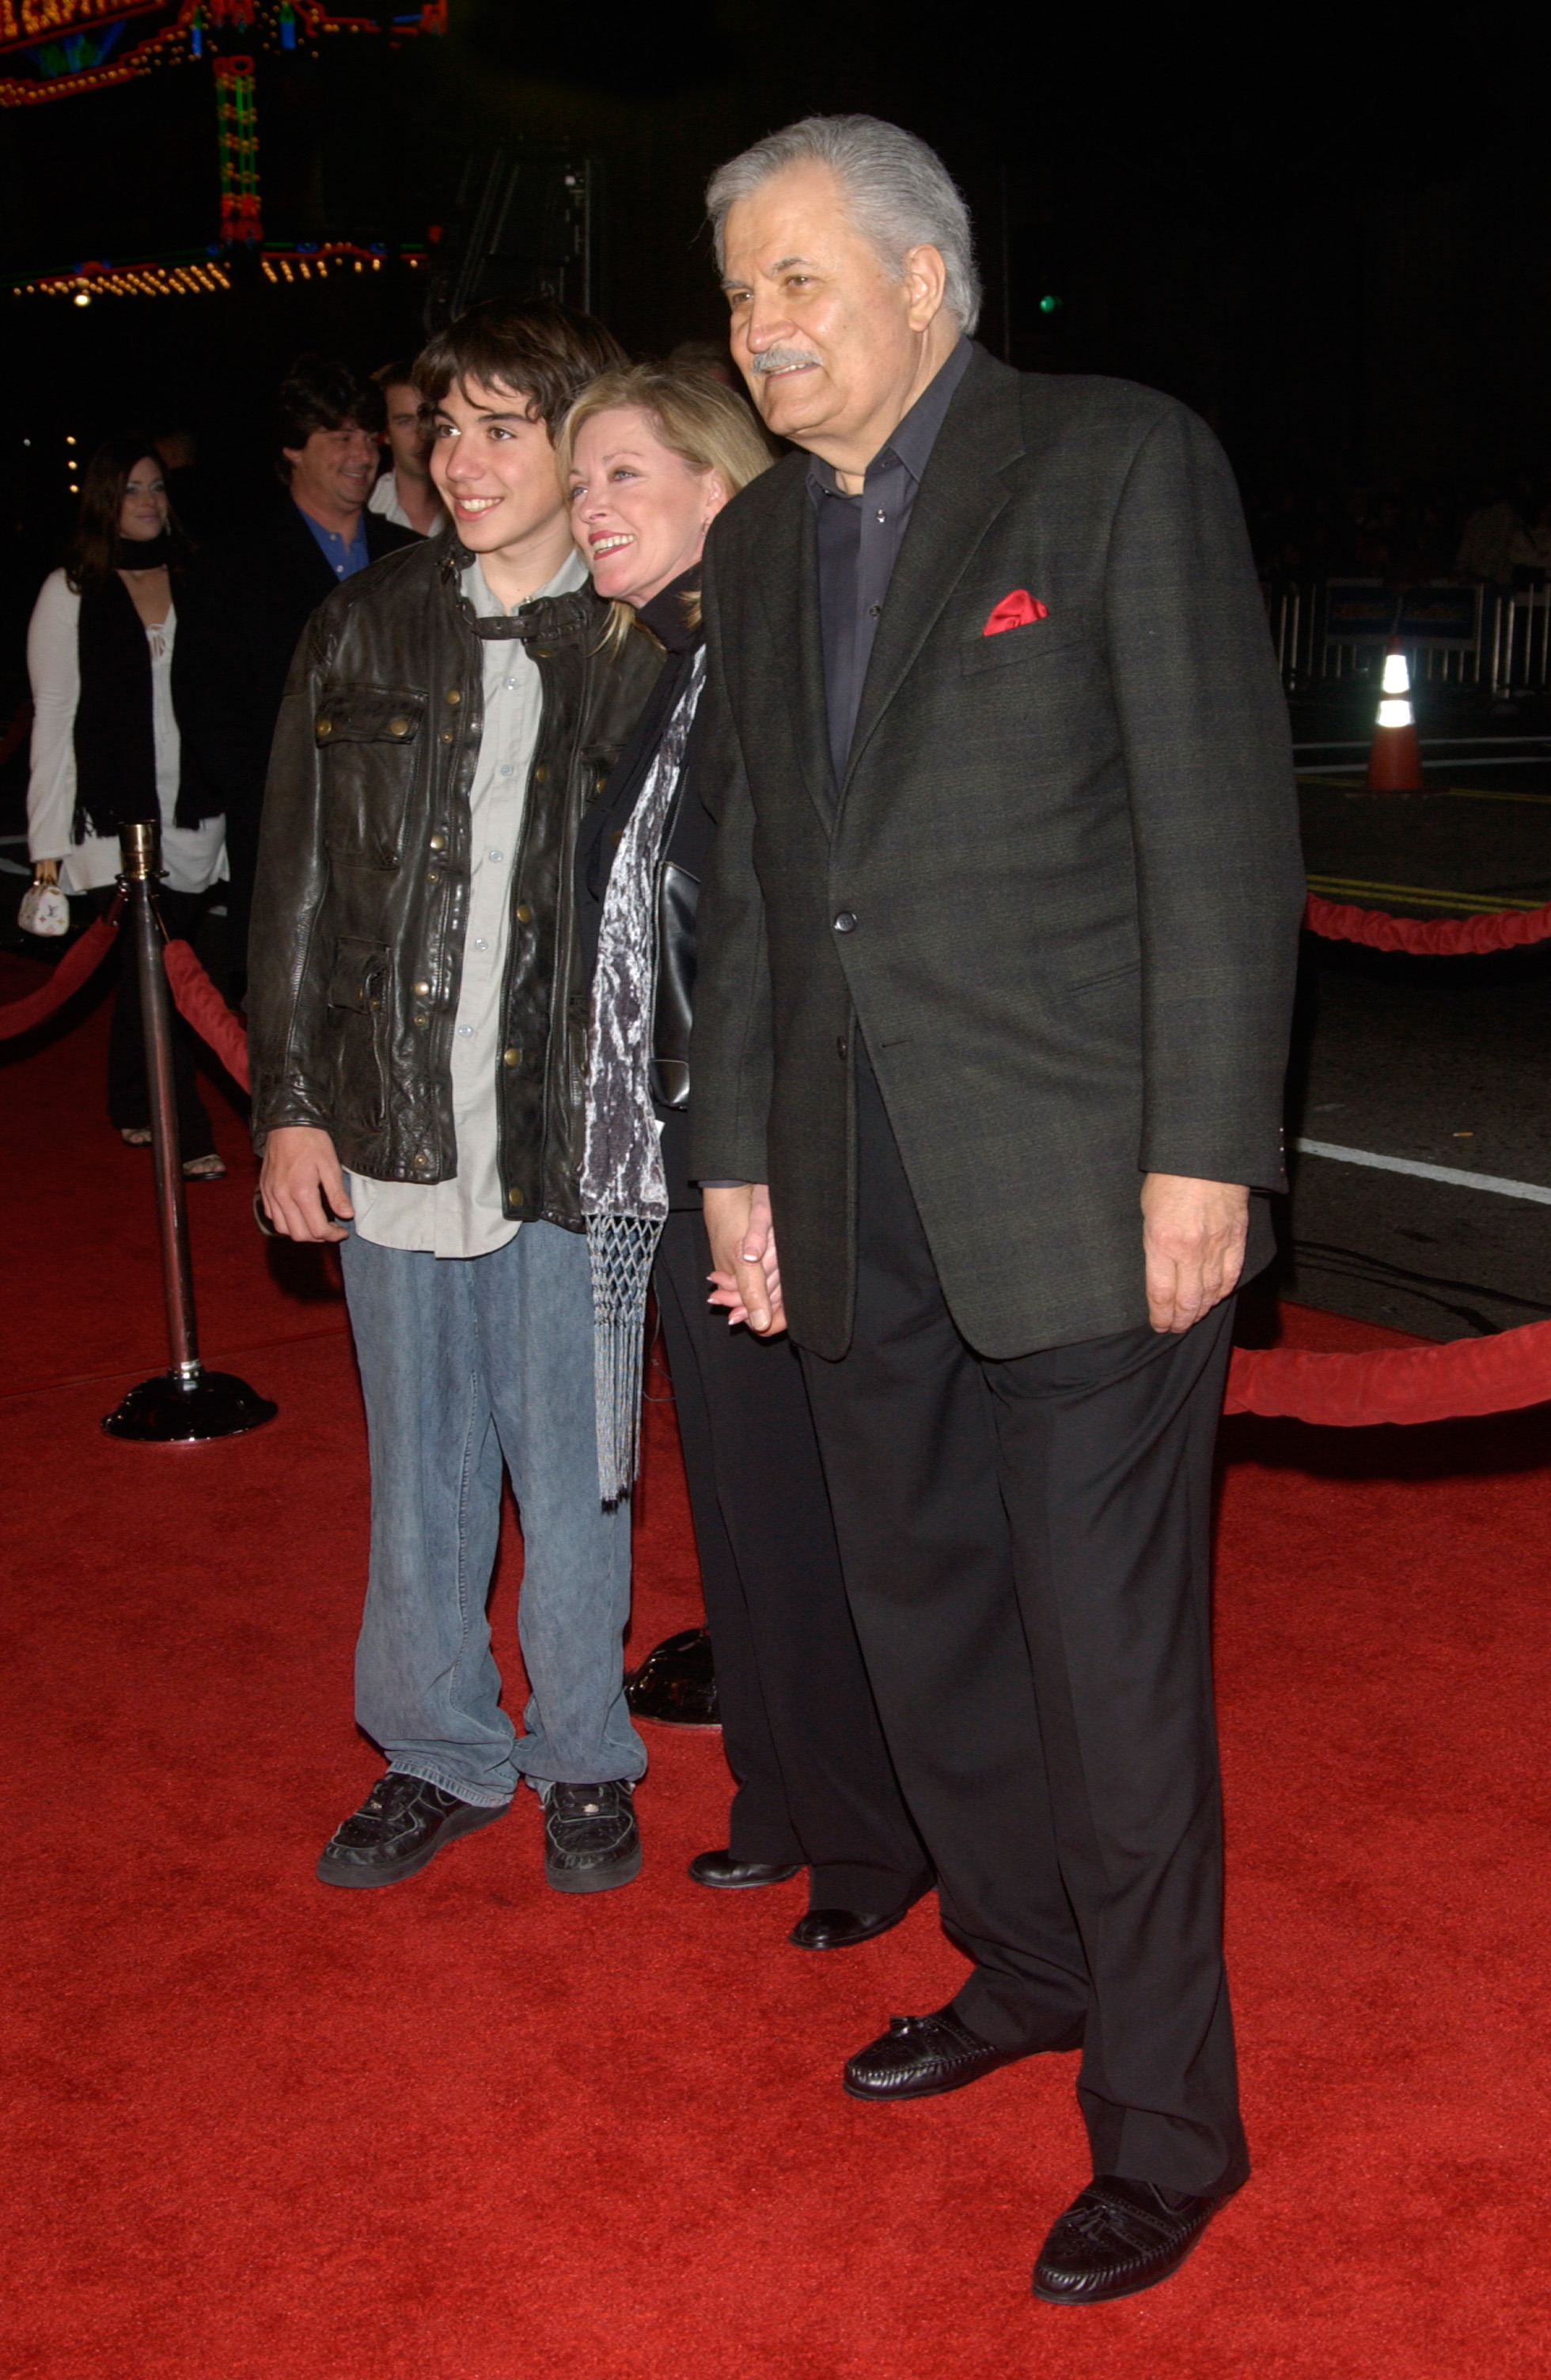 John Aniston avec sa femme Sherry Rooney et son fils Alexander en Californie en 2004 | Source : Shutterstock